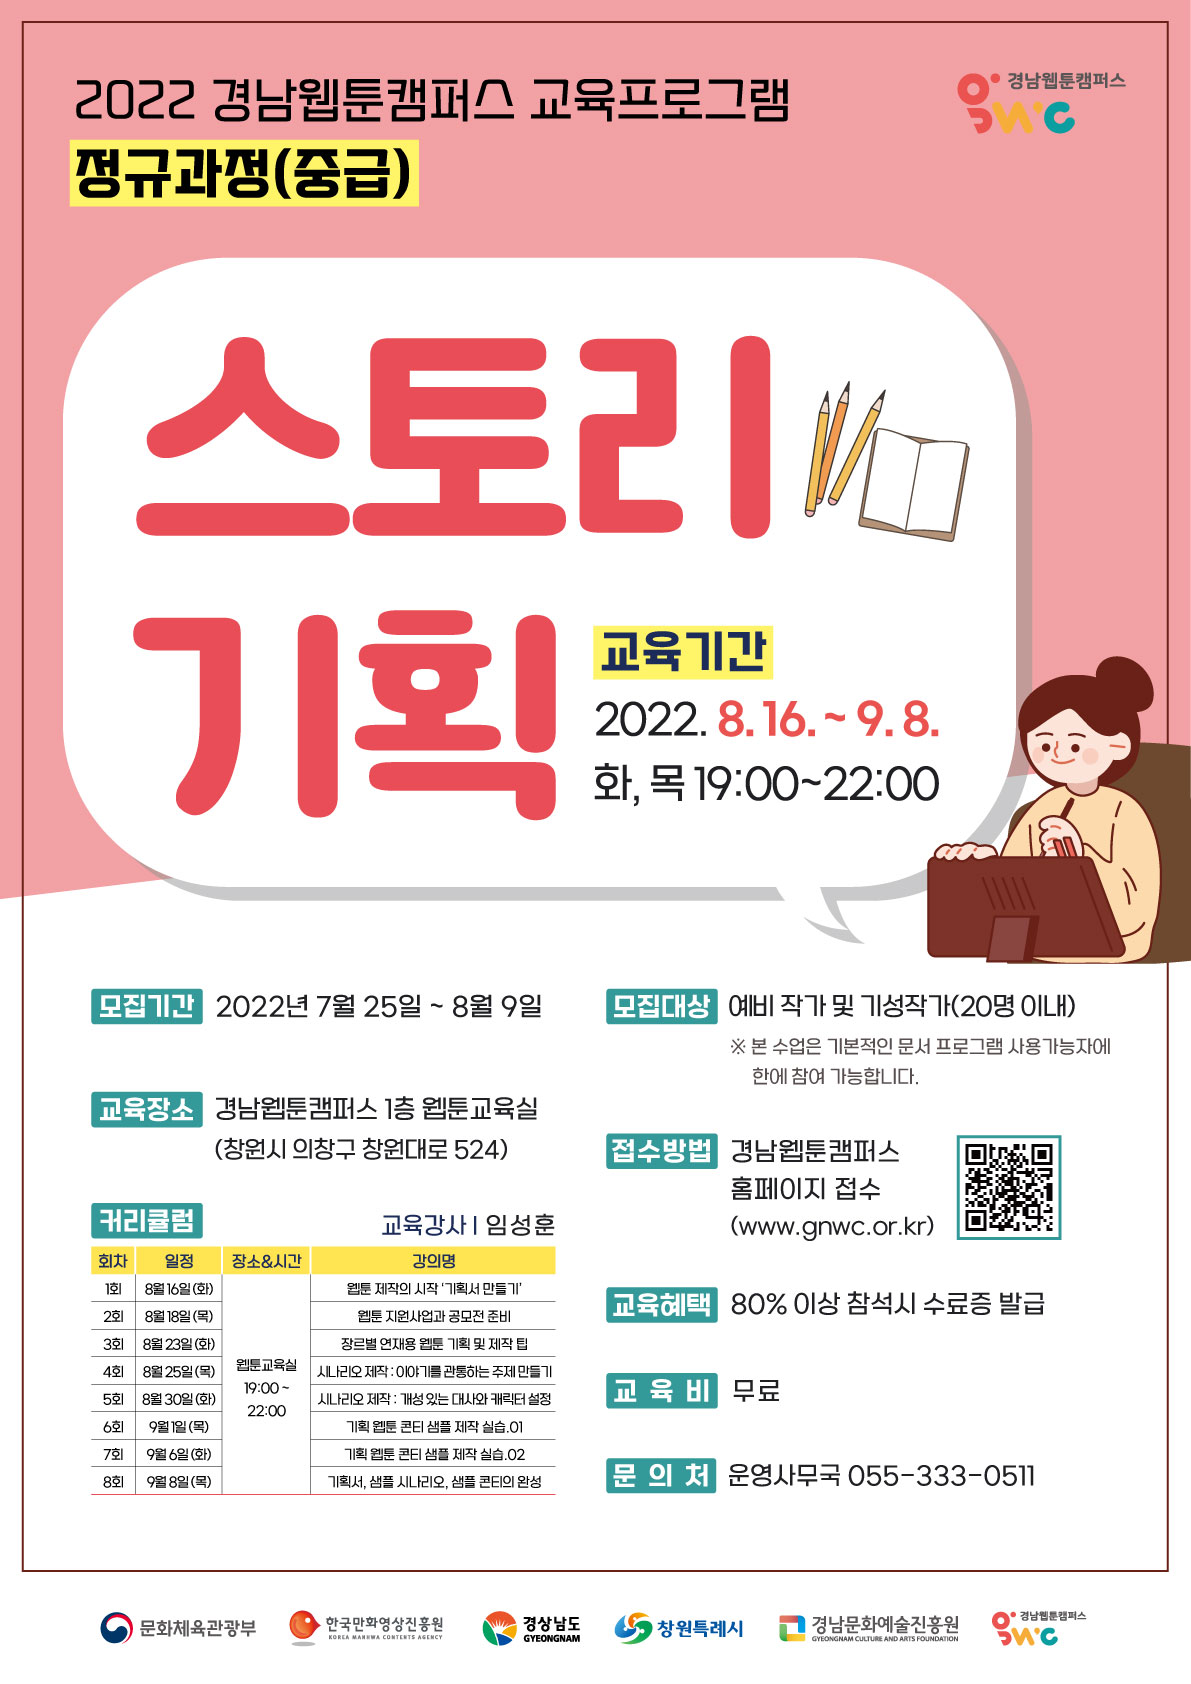 [경남웹툰캠퍼스] 교육프로그램 정규과정(중급) - '스토리기획'